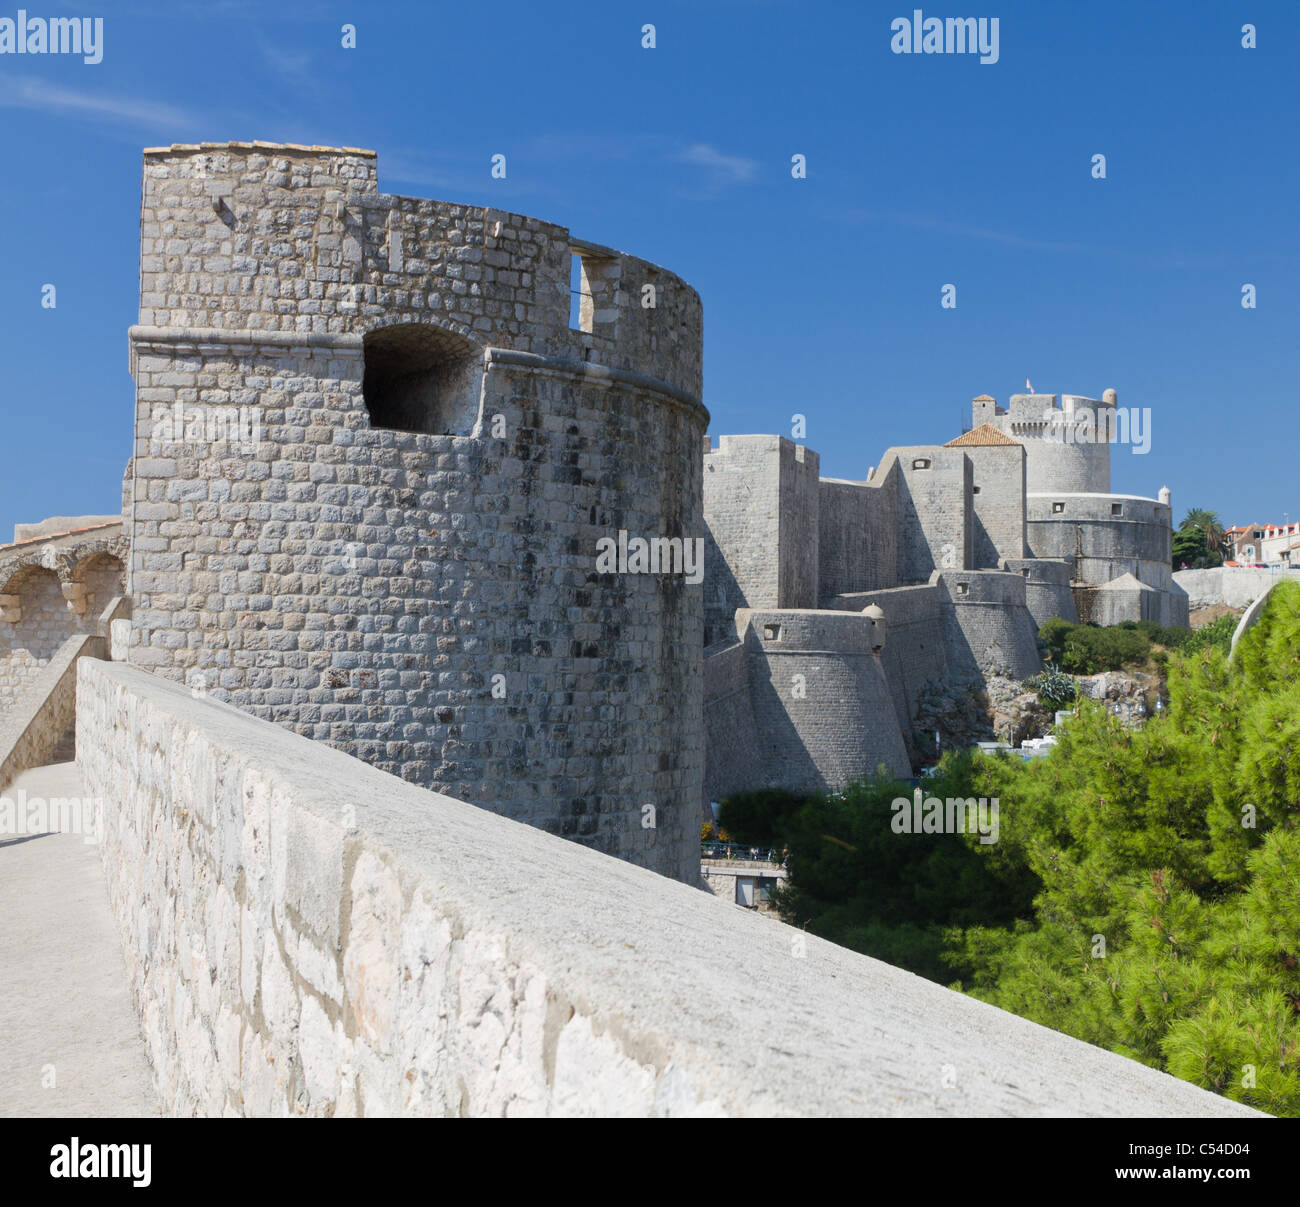 Murs blanc ville forte avec tour d'observation construite sur la côte rocheuse de Dubrovnik, Croatie Banque D'Images